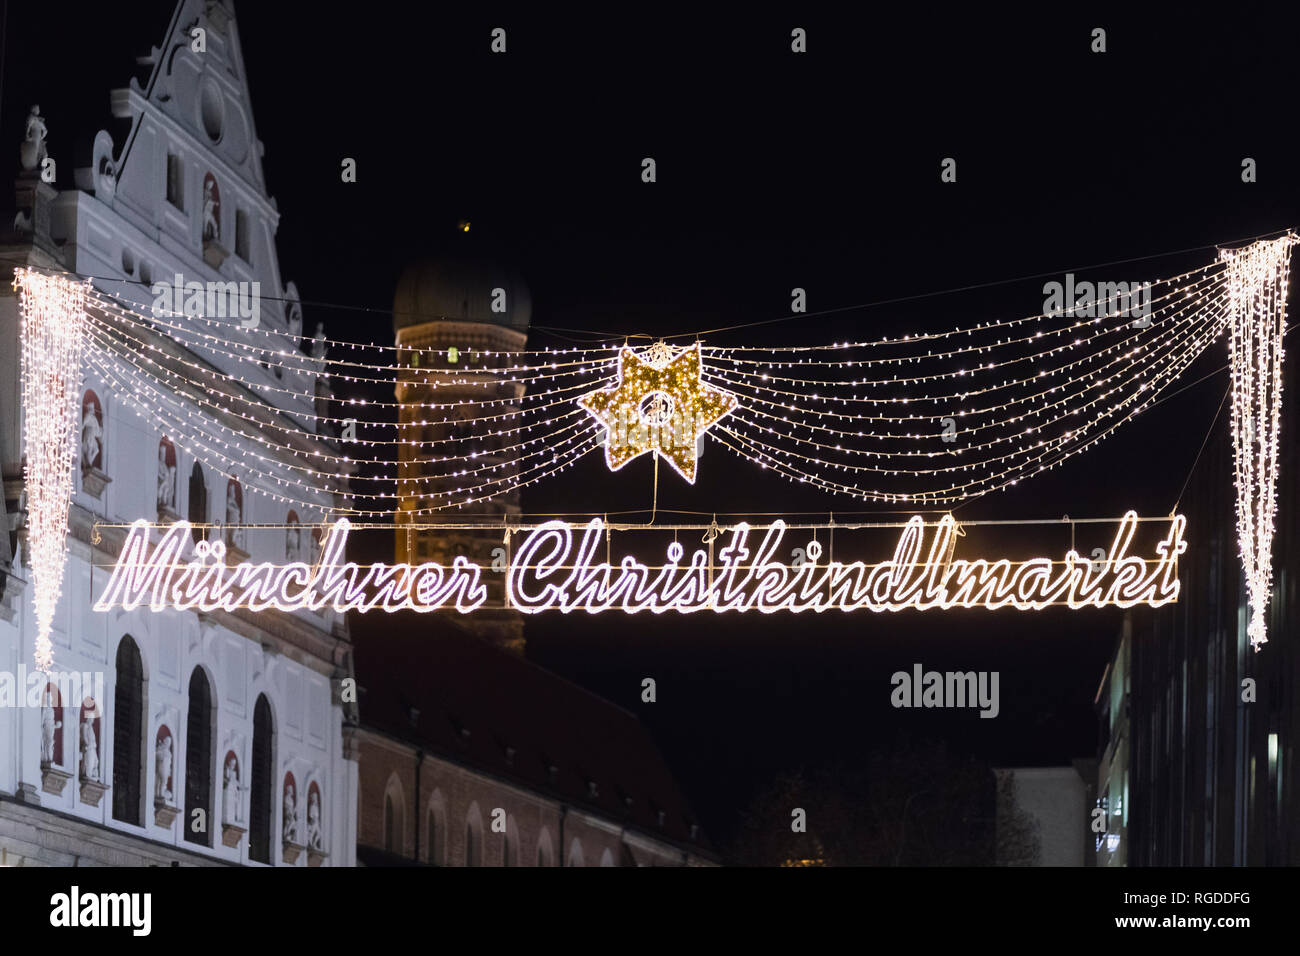 Germany, Munich, entrance of Christkindlmarkt Stock Photo